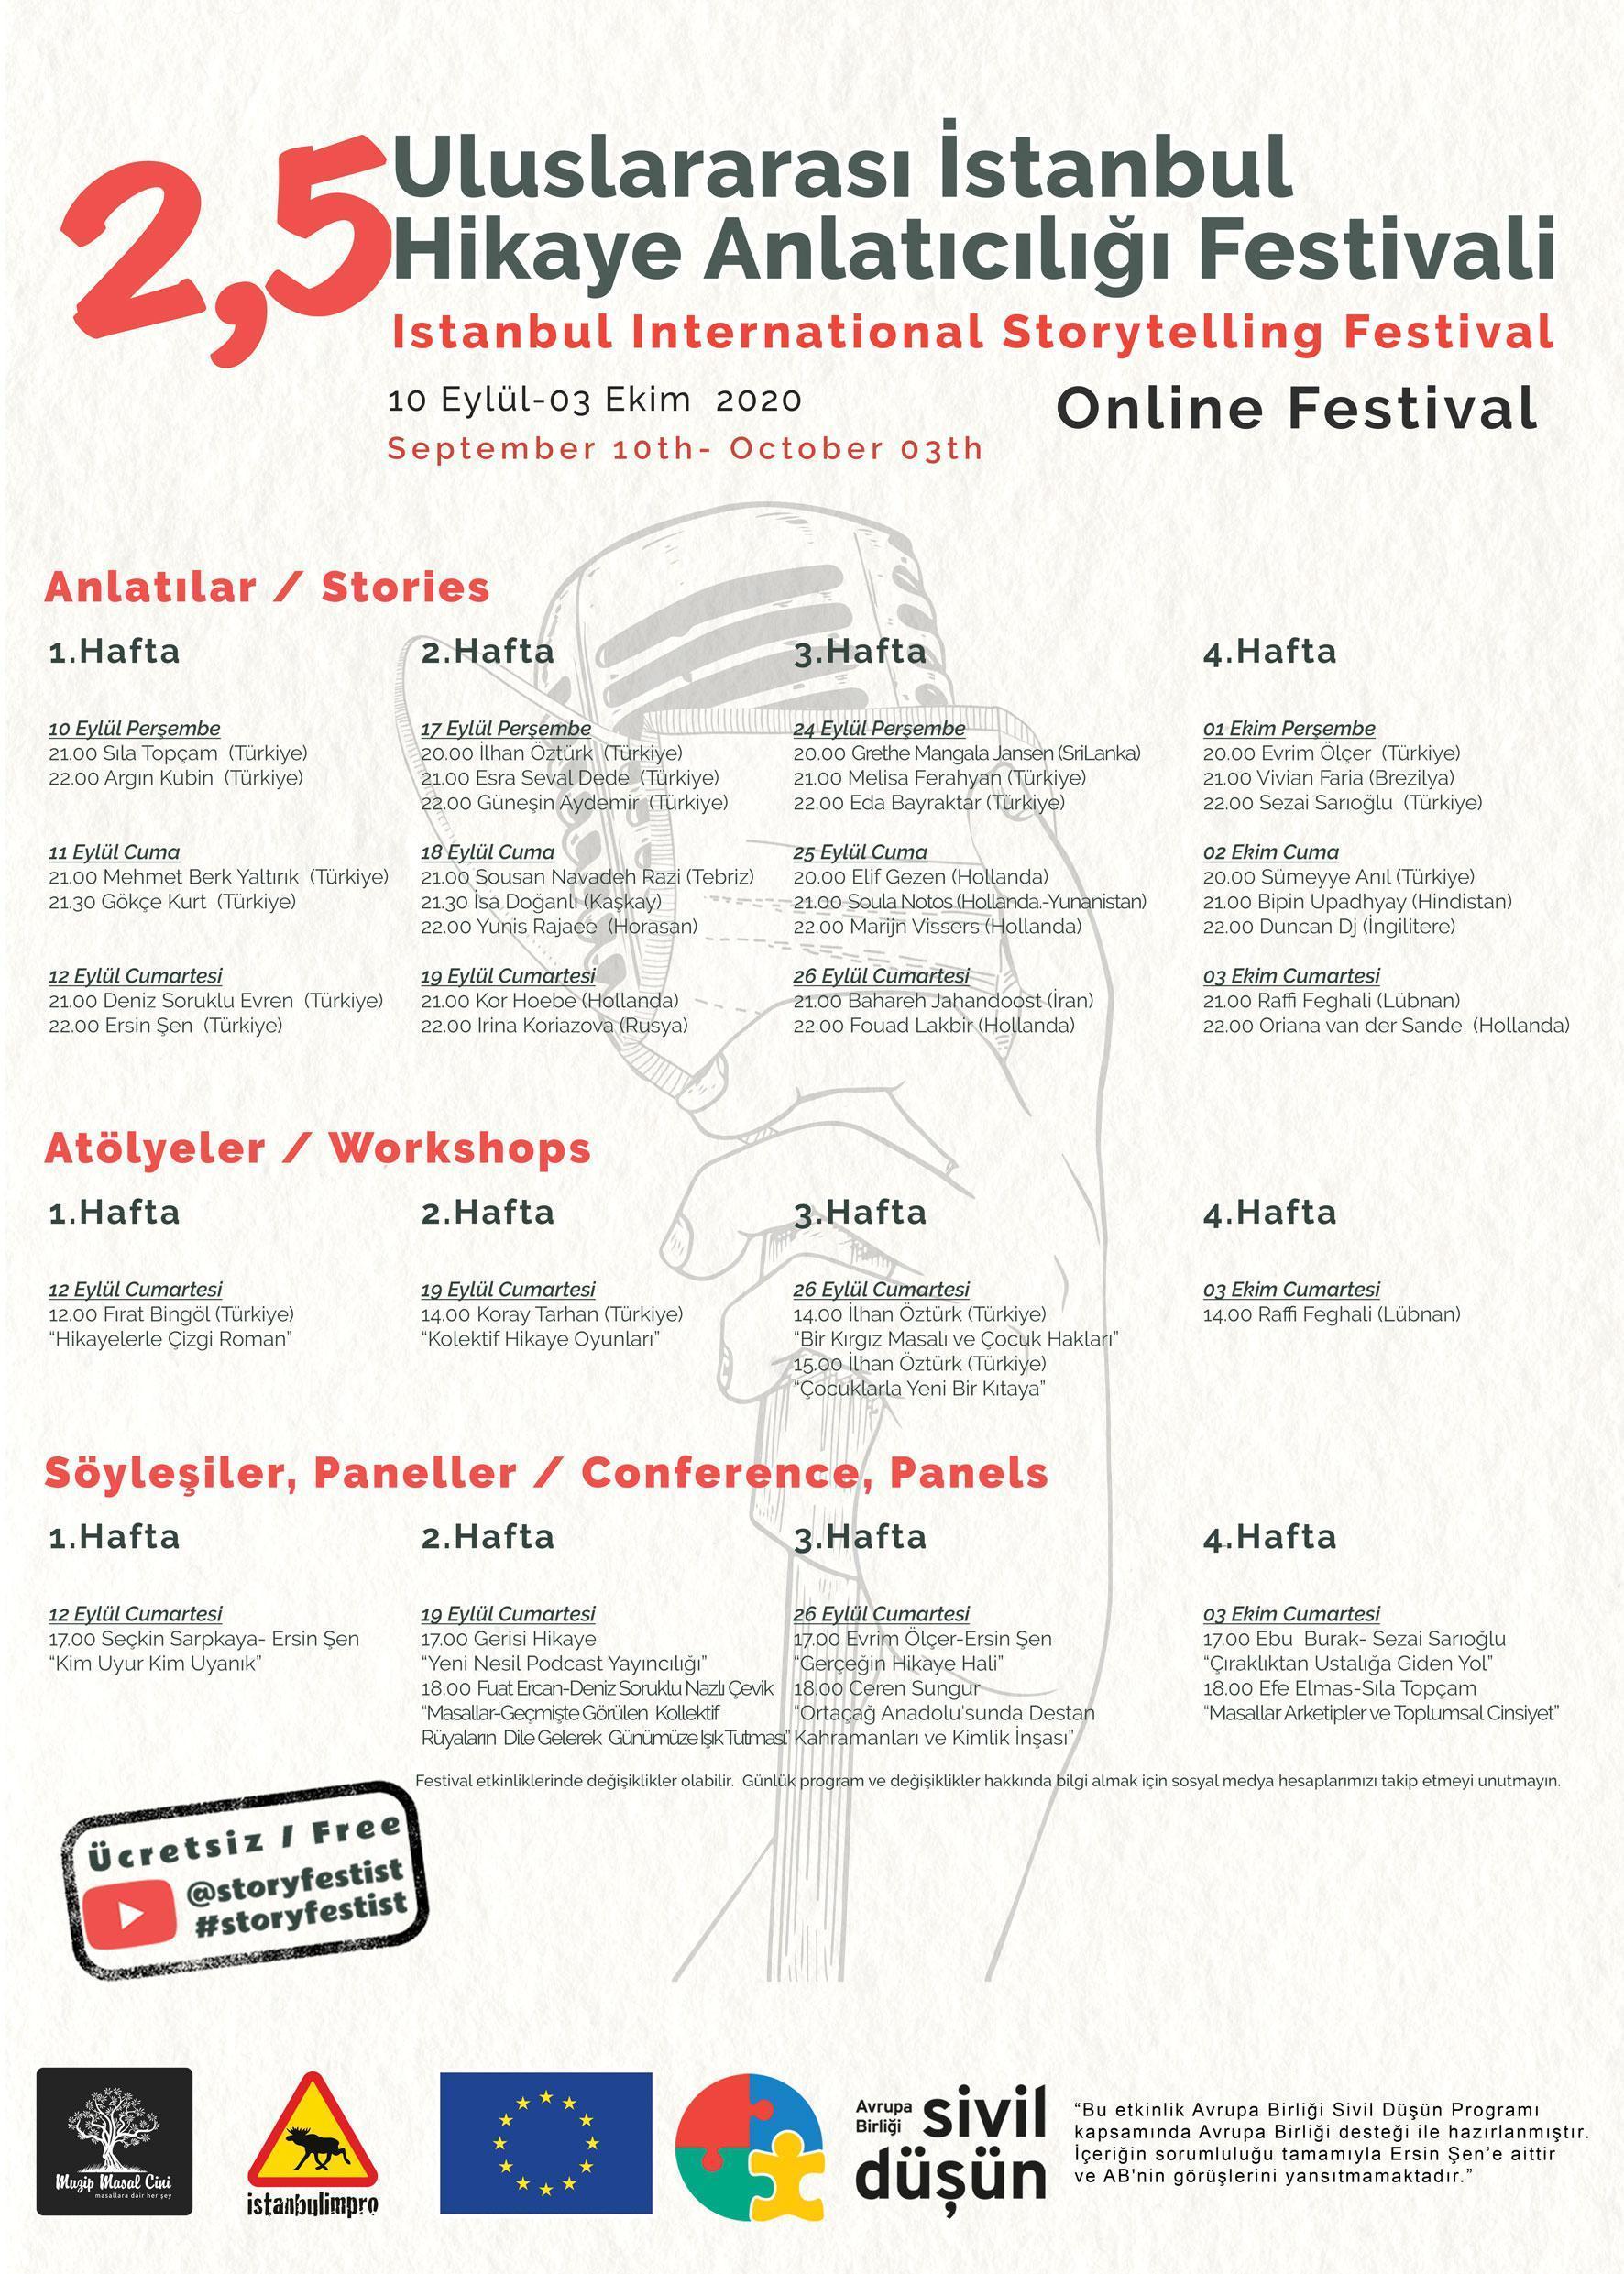 2.5 Uluslararası İstanbul Hikâye Anlatıcılığı Online Festivali